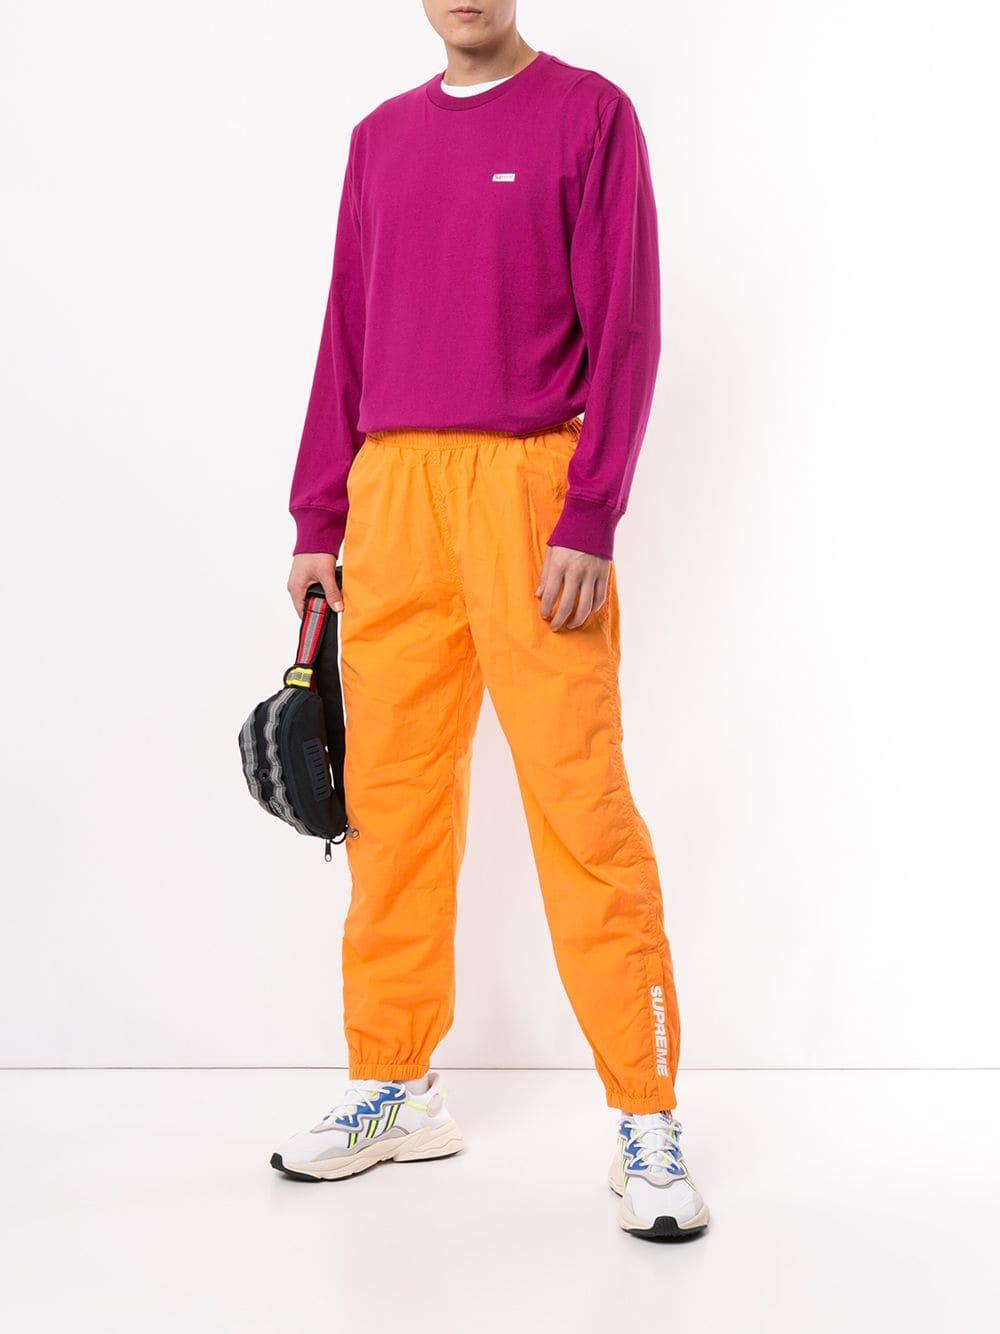 Supreme Warm Up Track Pants in Orange for Men - Lyst